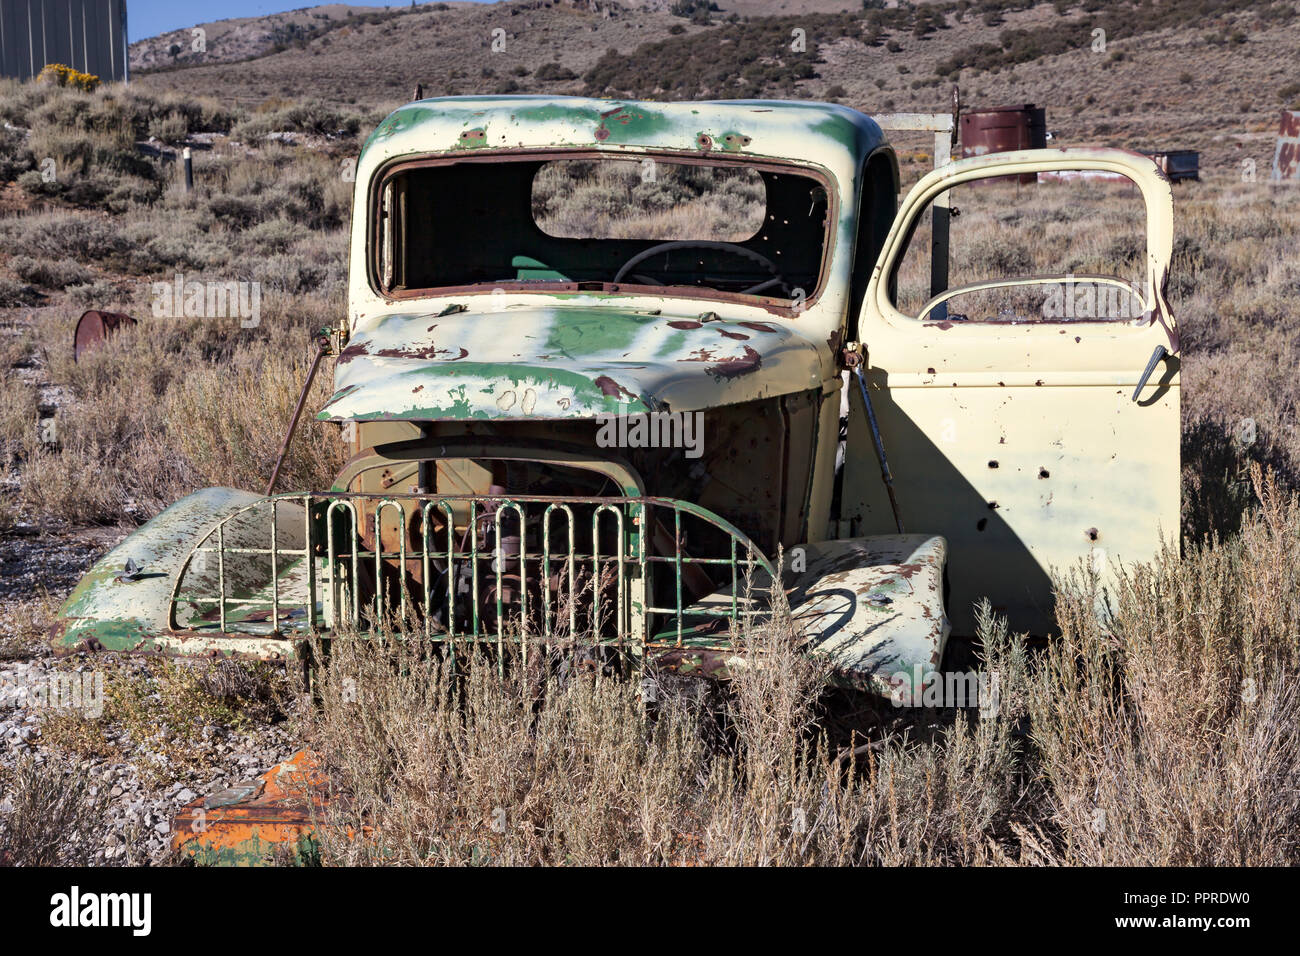 La II Guerra Mundial era de 1 1/2 tonelada camiones Chevrolet, probablemente construida originalmente para el ejército de los EE.UU., ahora se sienta abandonada en un sitio minero en Hamilton, Nevada. Foto de stock